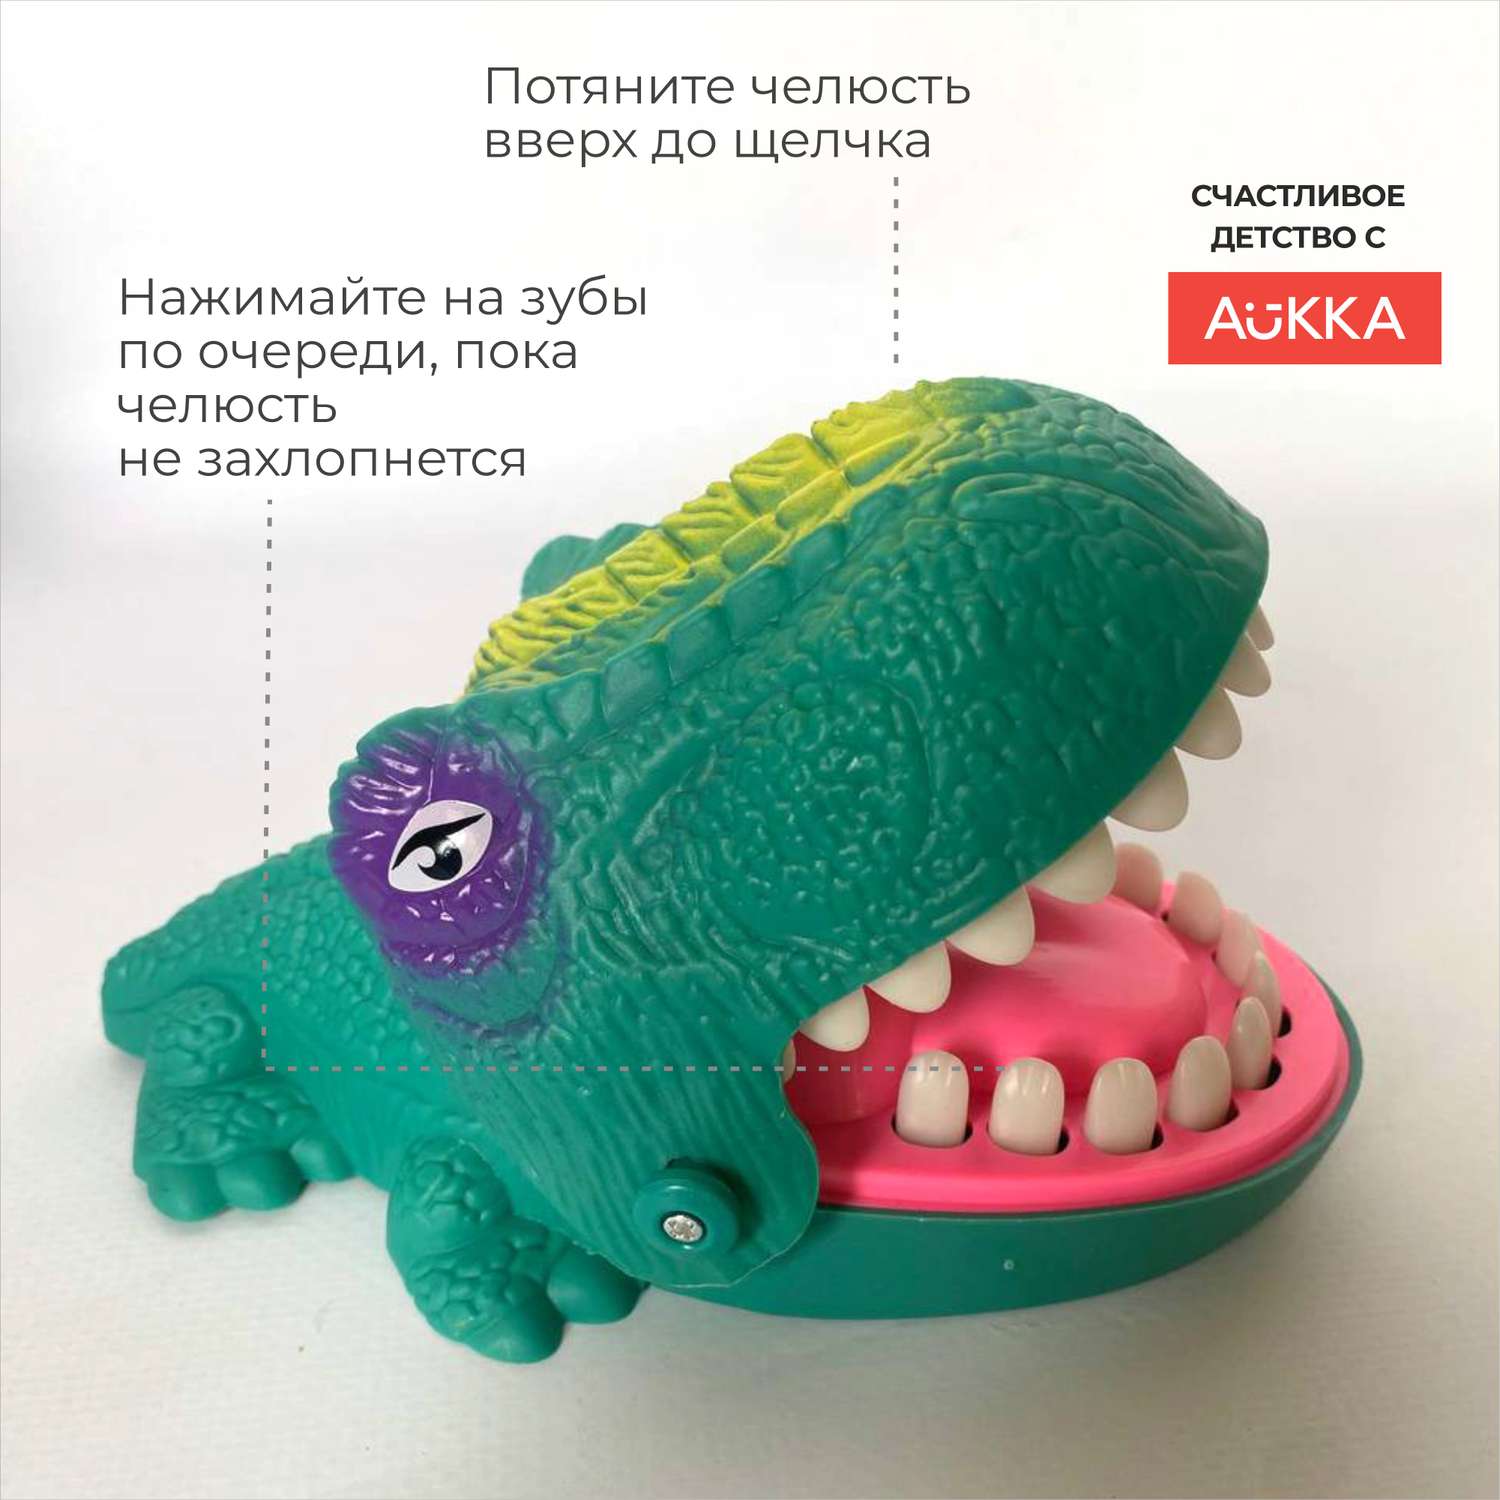 Настольная игра AUKKA динозавр зубастик угадай больной зуб - фото 3